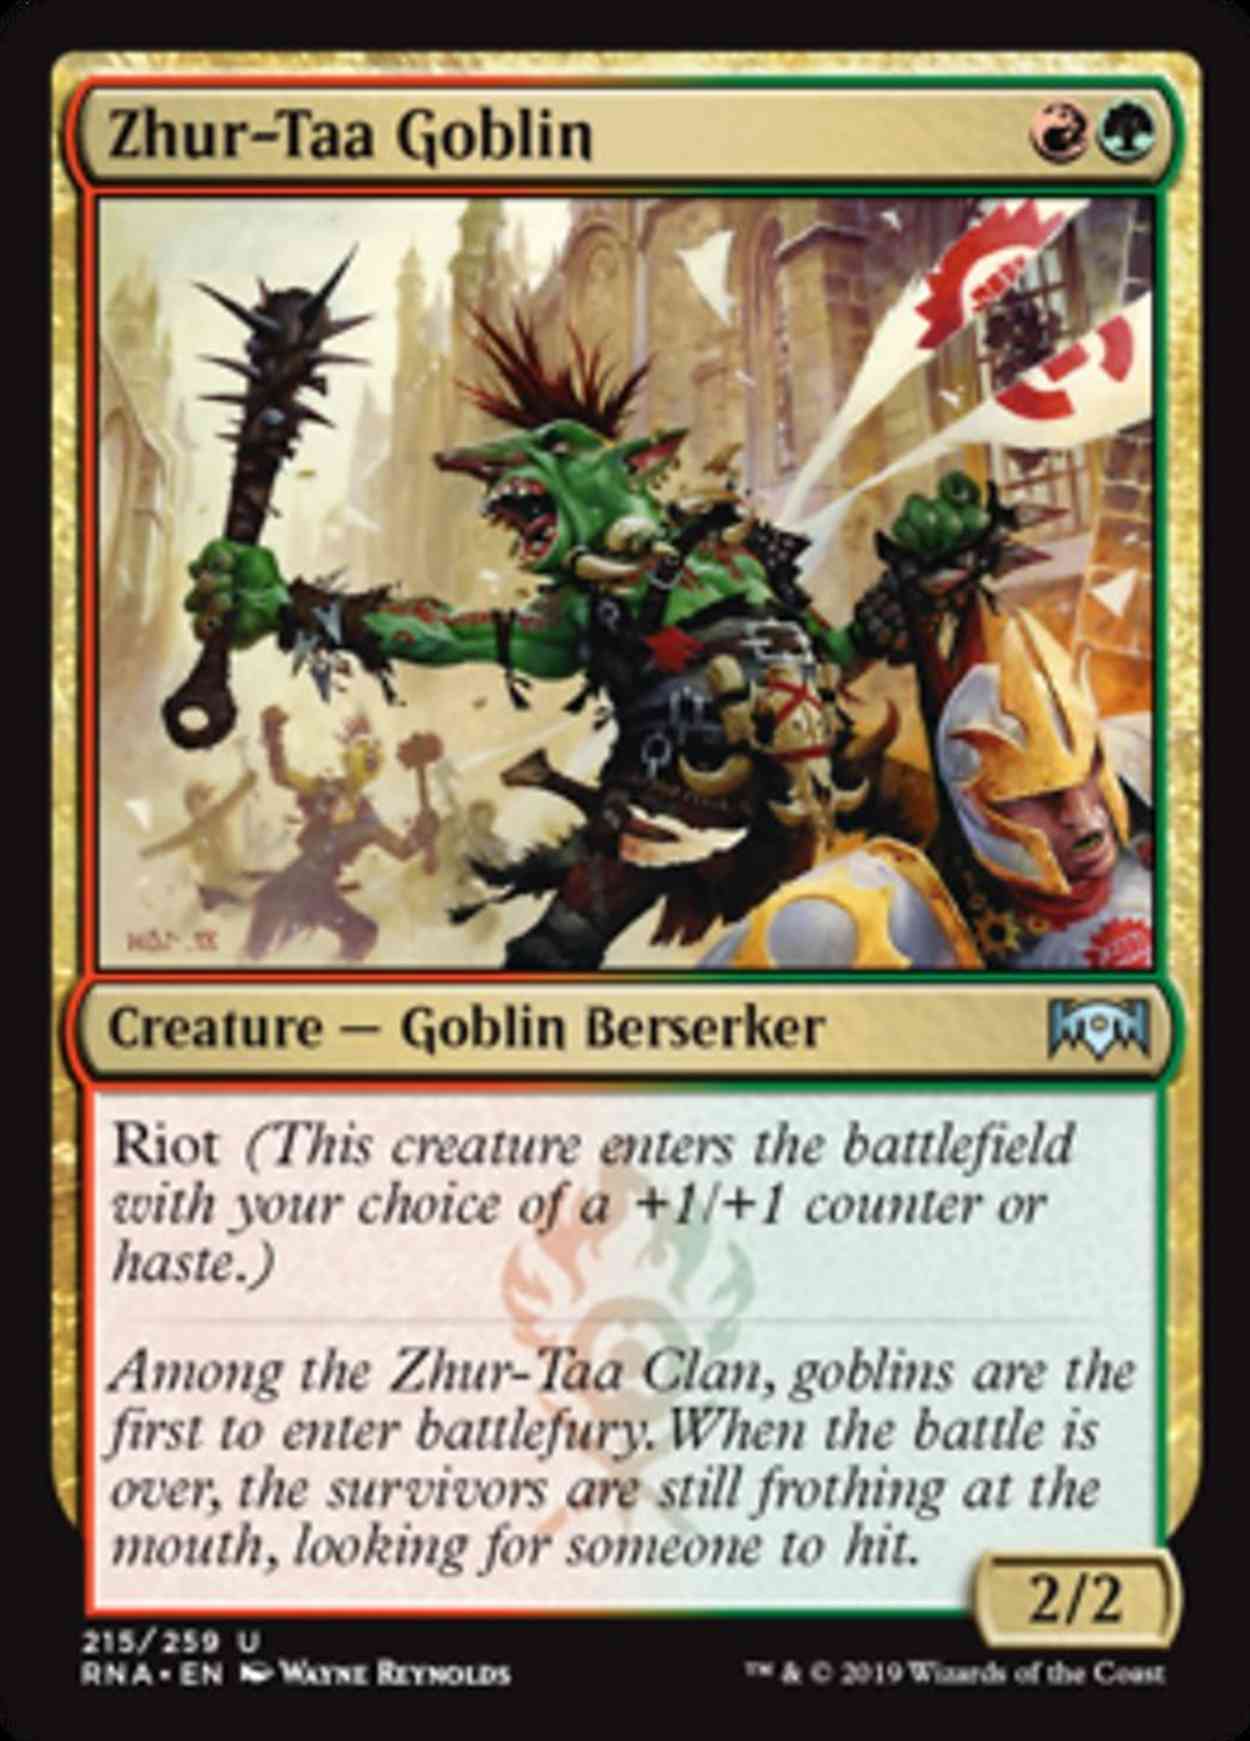 Zhur-Taa Goblin magic card front